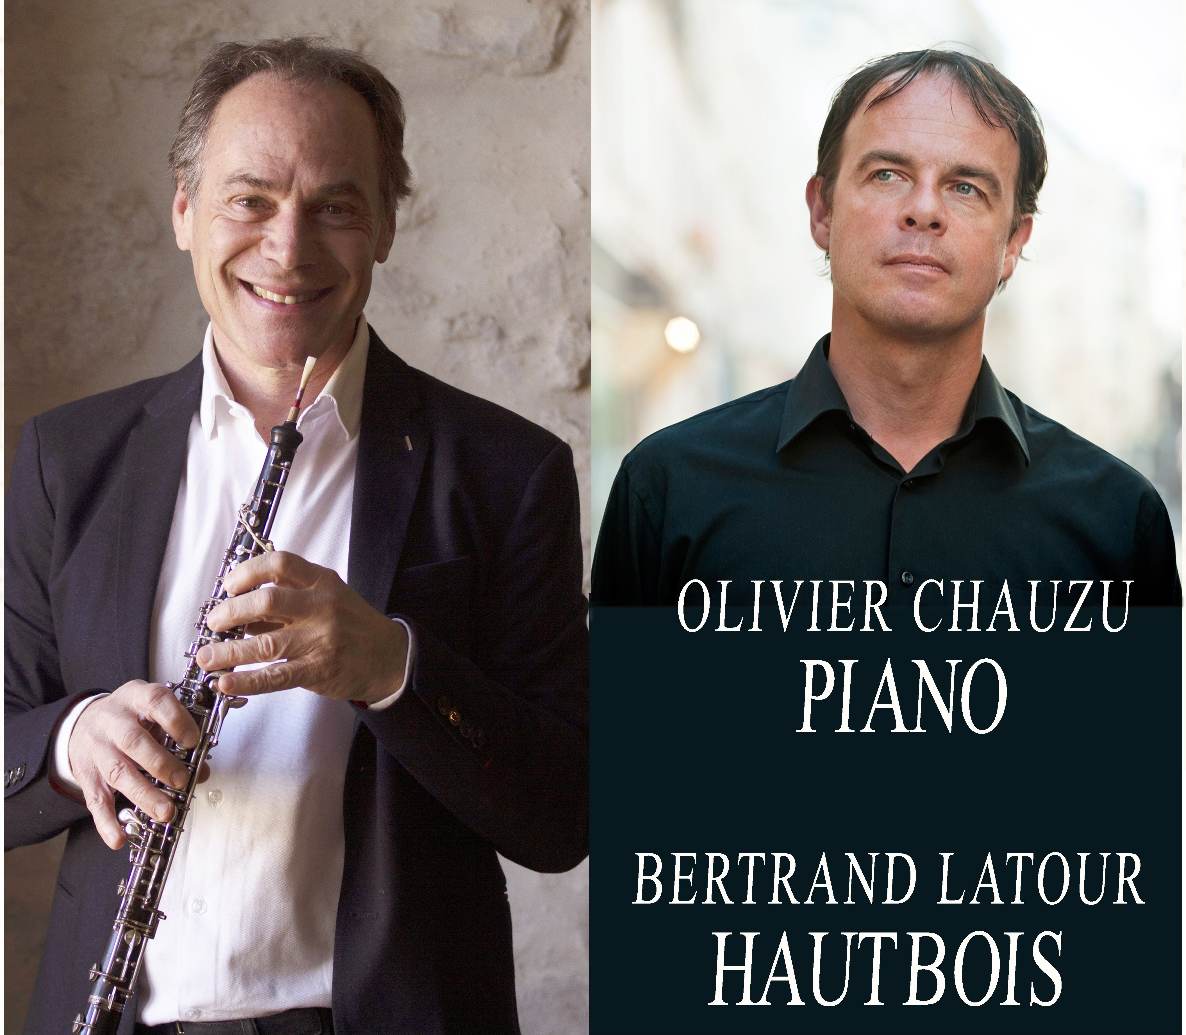 Olivier Chauzu et Bertrand Latour de concert au Palais